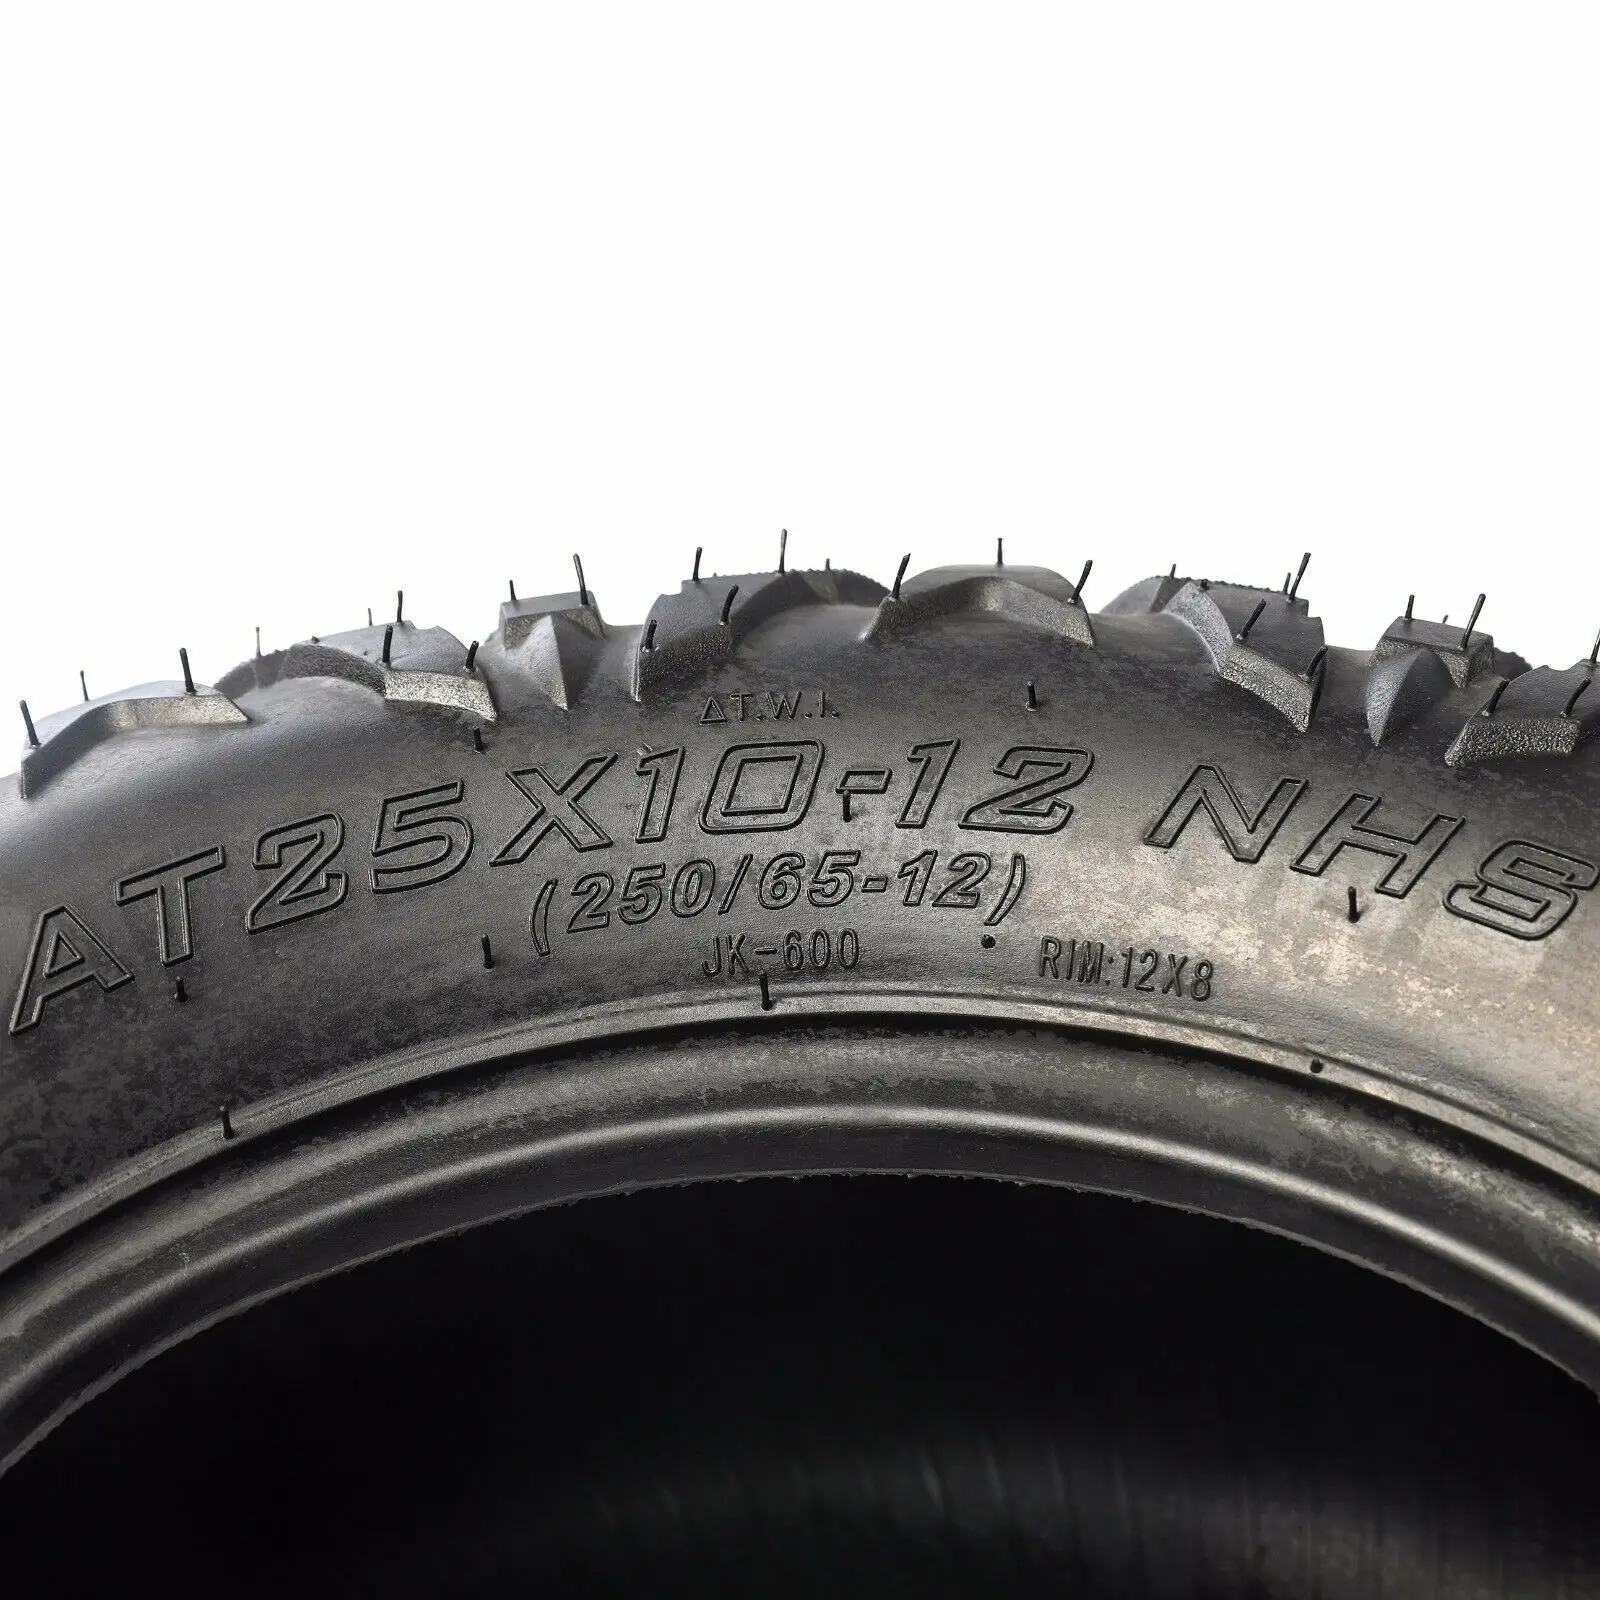 2pcs 25x8-12 & 2pcs 25x10-12 Tyres 6ply For Off Road Quad ATV